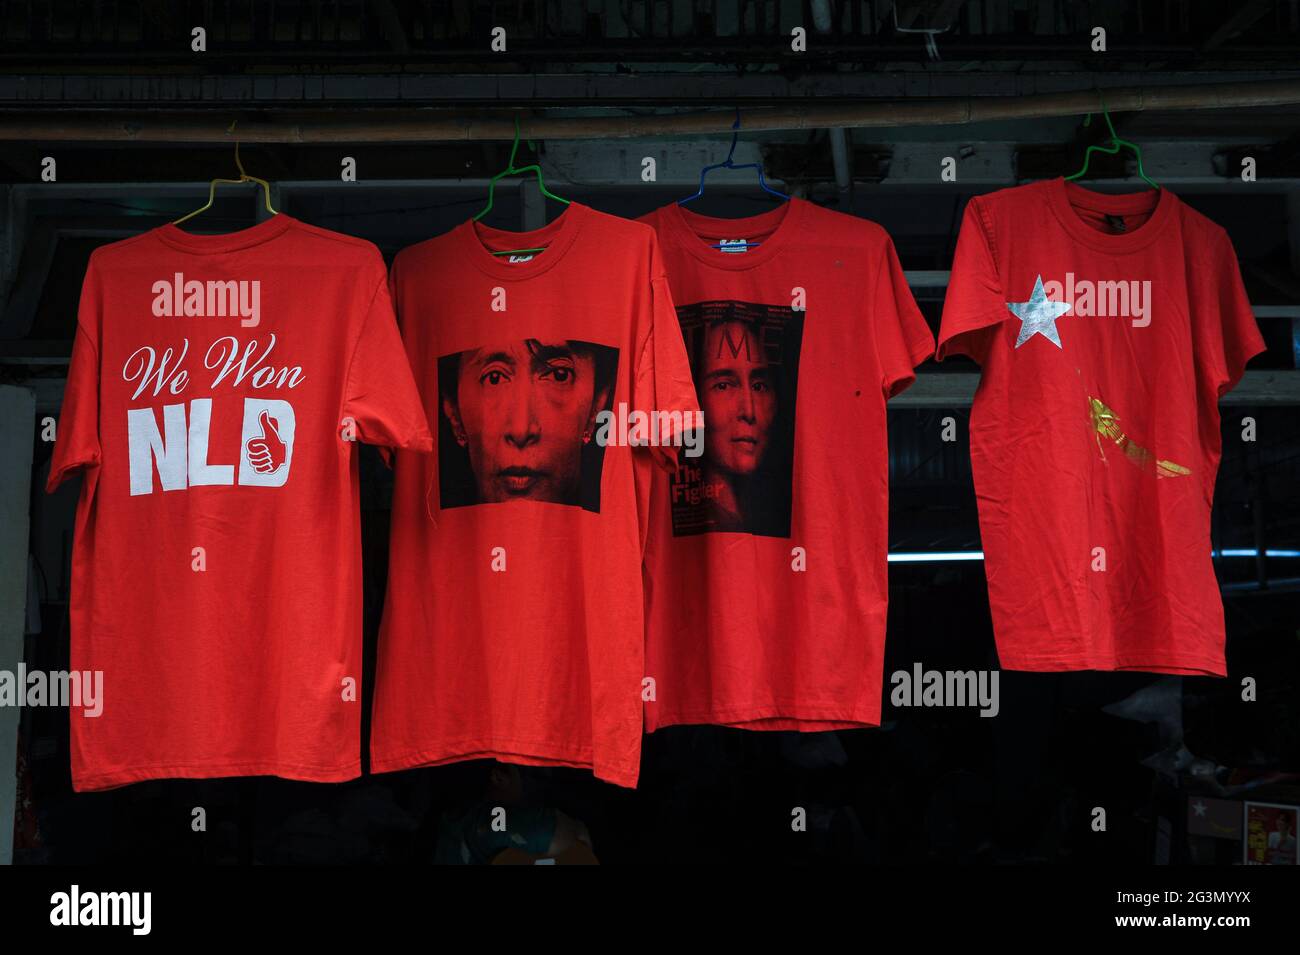 '10.11.2015, Yangon, , Myanmar - Rote T-Shirts mit dem Bild von Aung San Suu Kyi und der Aufschrift 'We won NLD' stehen in der Form an einem Straßenstand zum Verkauf Stockfoto